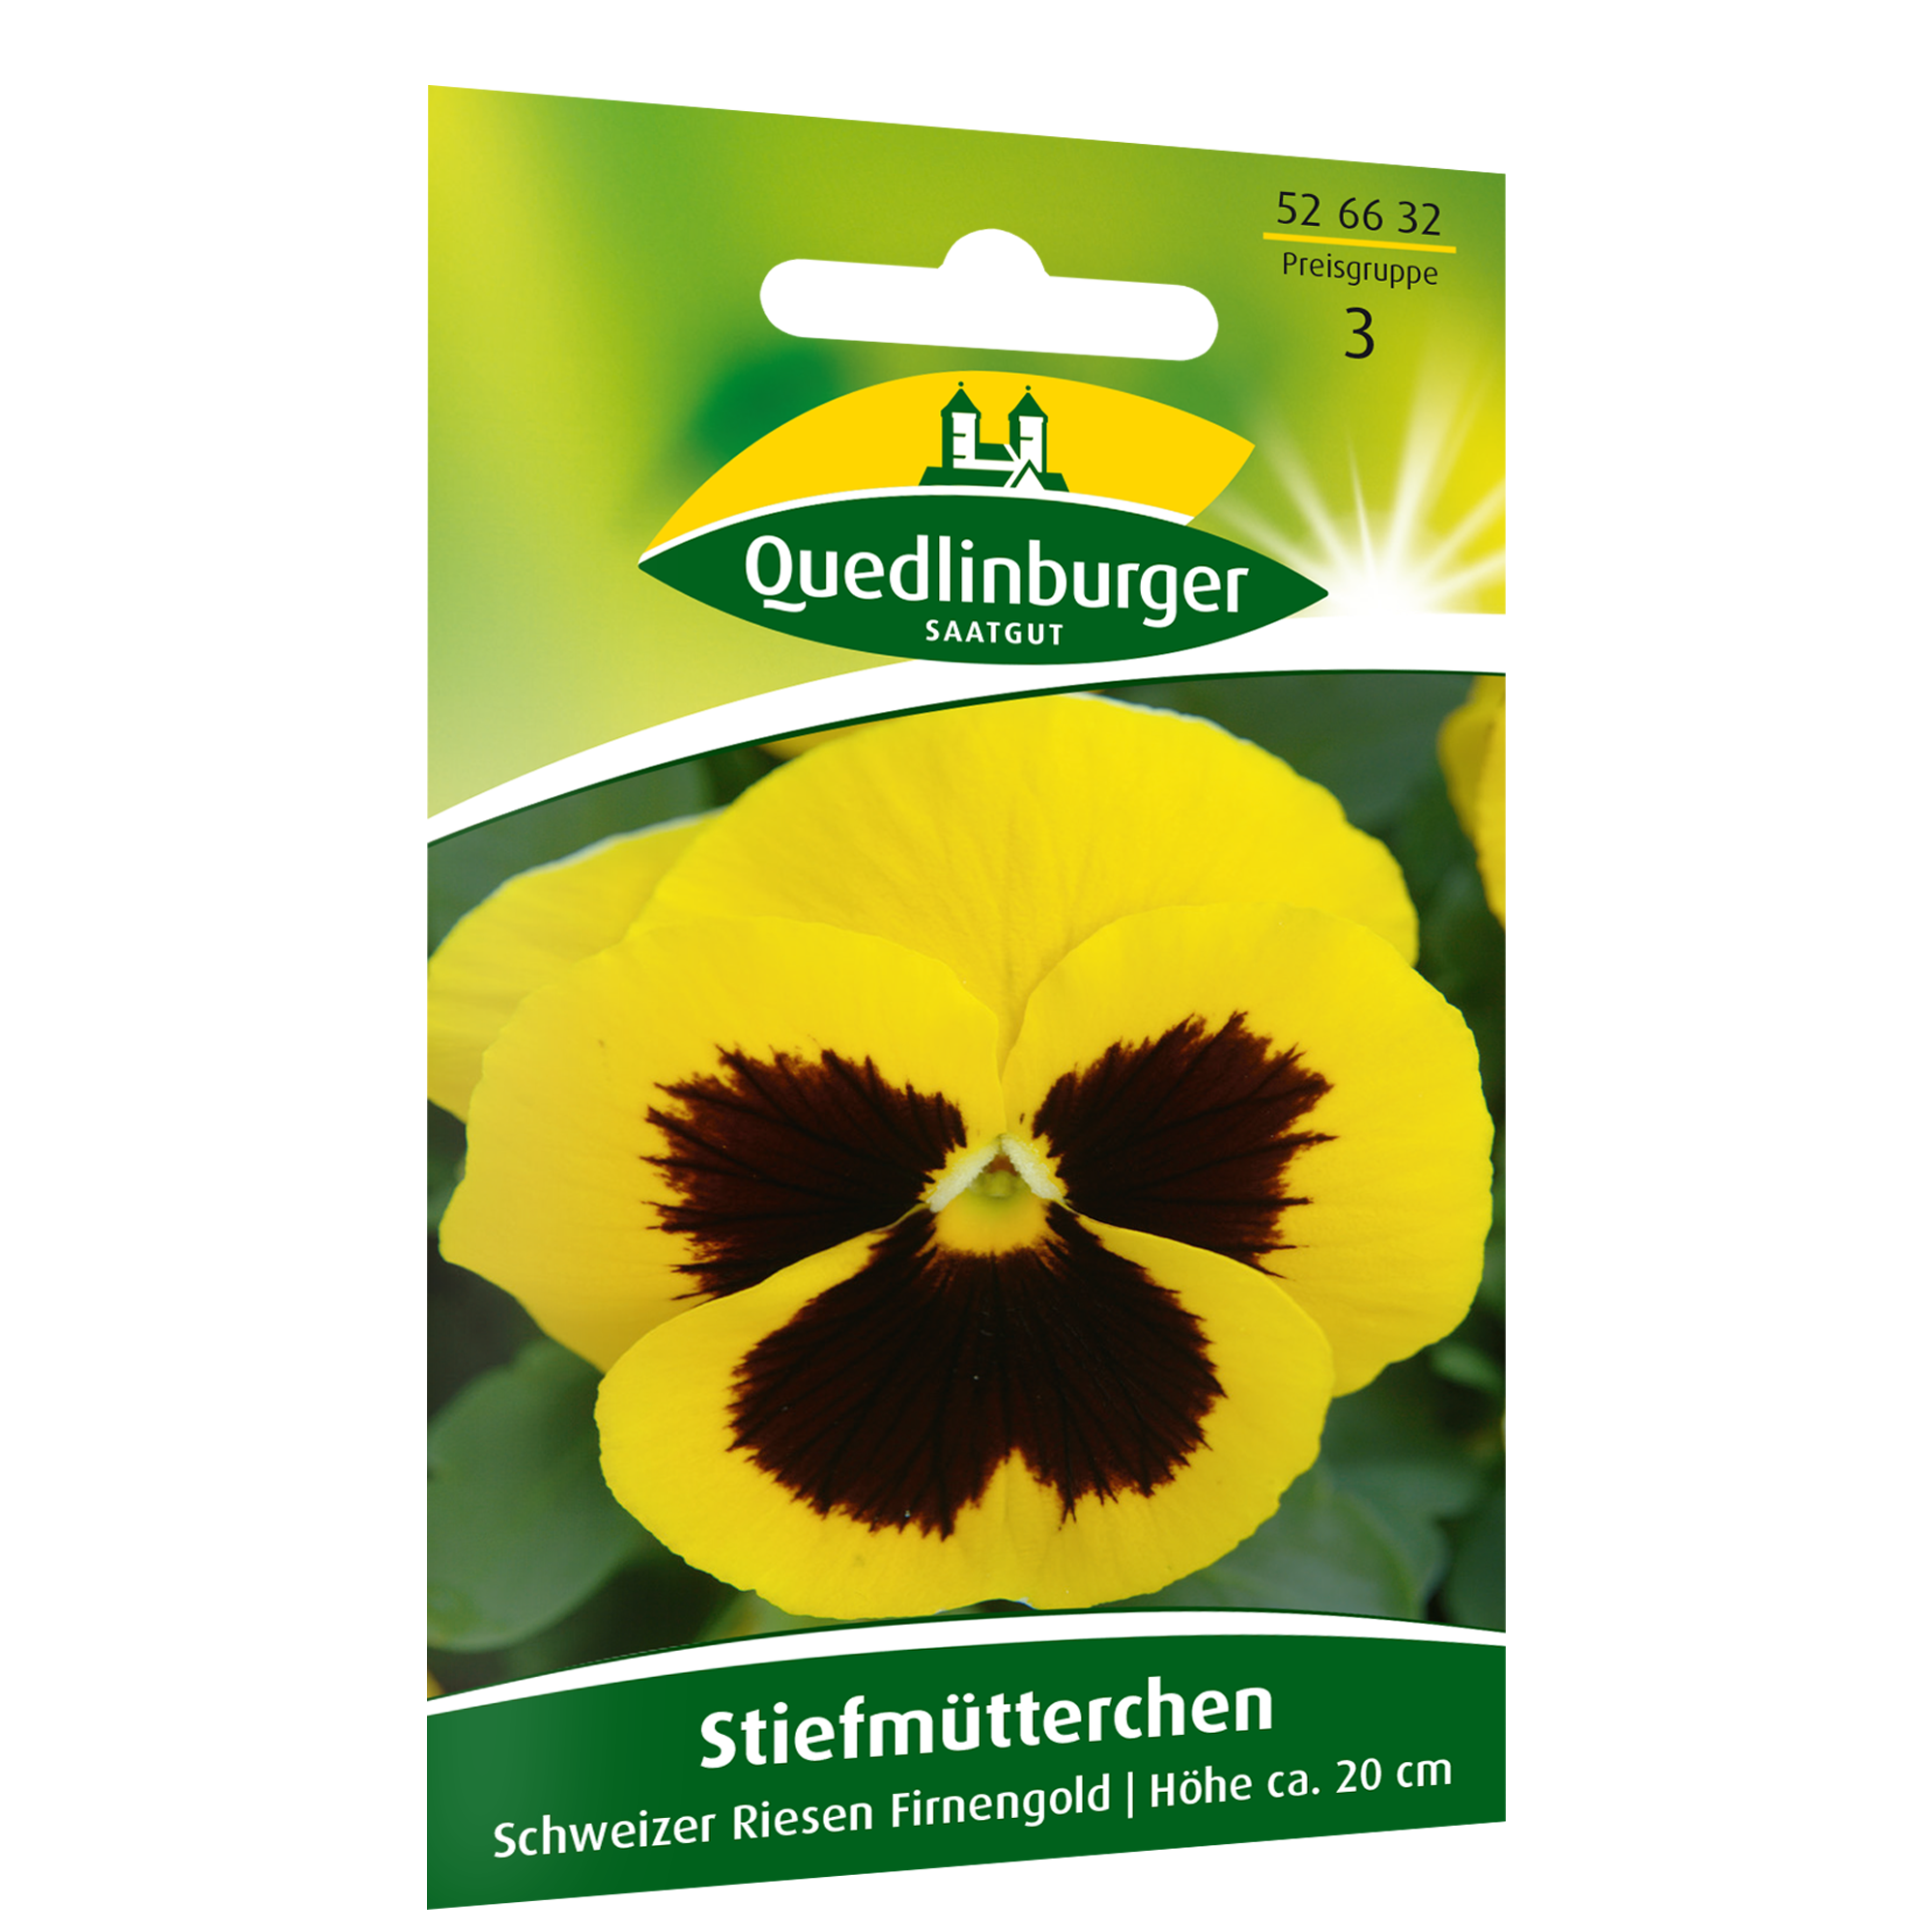 Stiefmütterchen 'Schweizer Riese Firnengold' + product picture